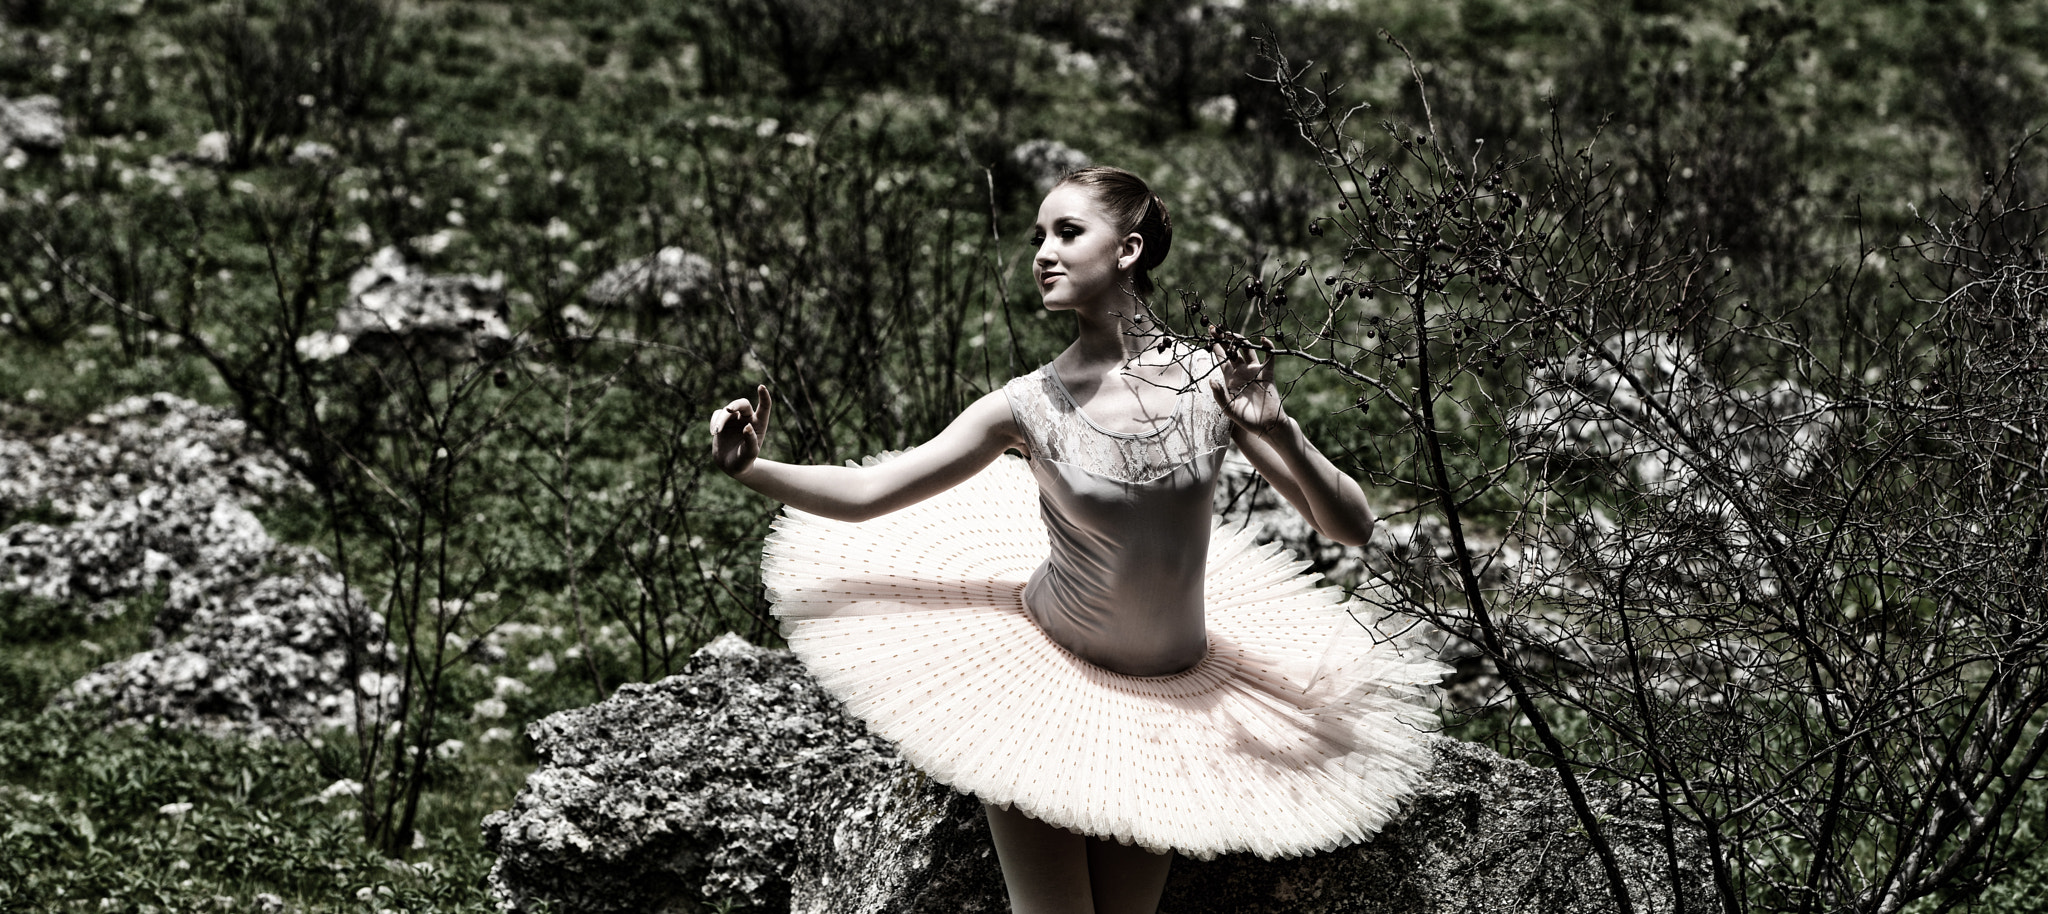 AF Nikkor 50mm f/1.8 N + 1.4x sample photo. Ballet photography